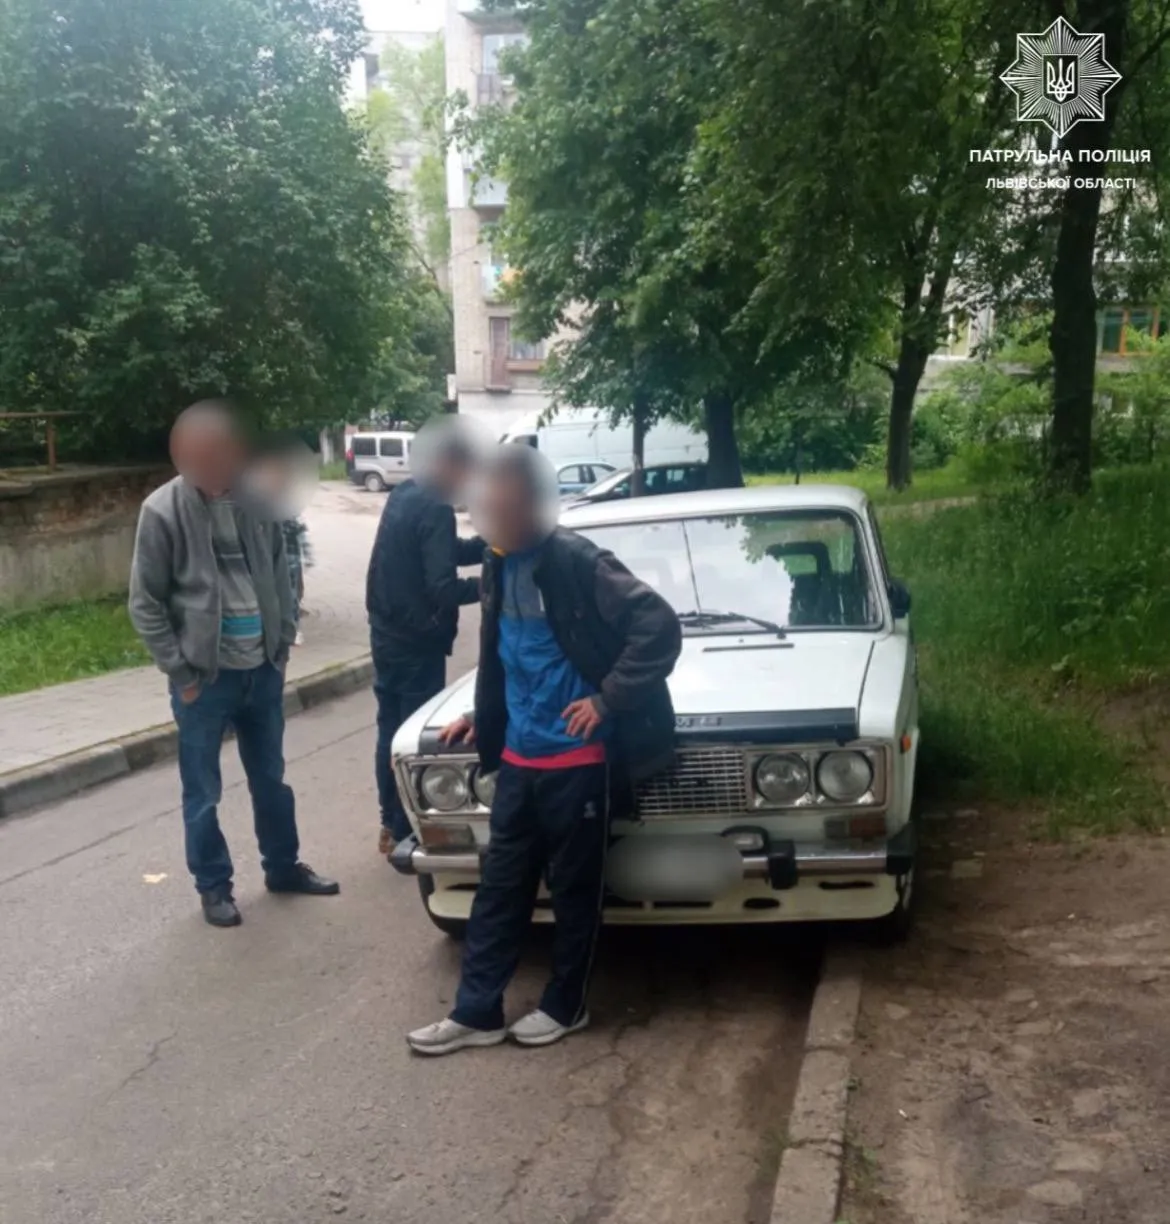 Перевищив діапазон алкотестера: п'яний водій у Львові шокував правоохоронців